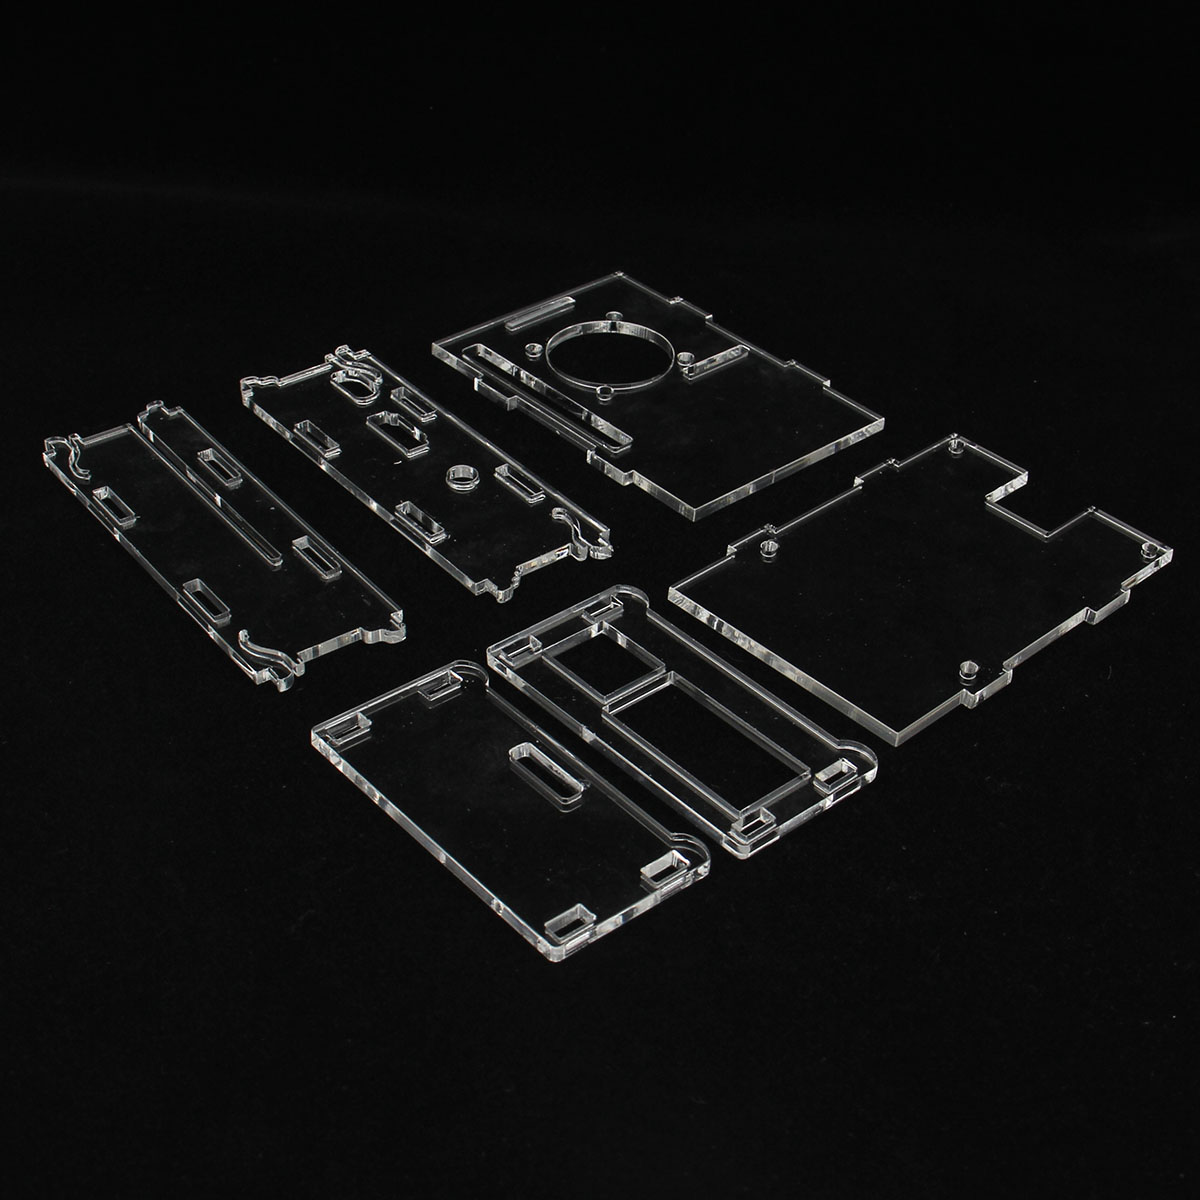 4-in-1-Raspberry-Pi-3-Model-BPlus--Acrylic-Case--Cooling-fan--Heatsink-Kit-1299562